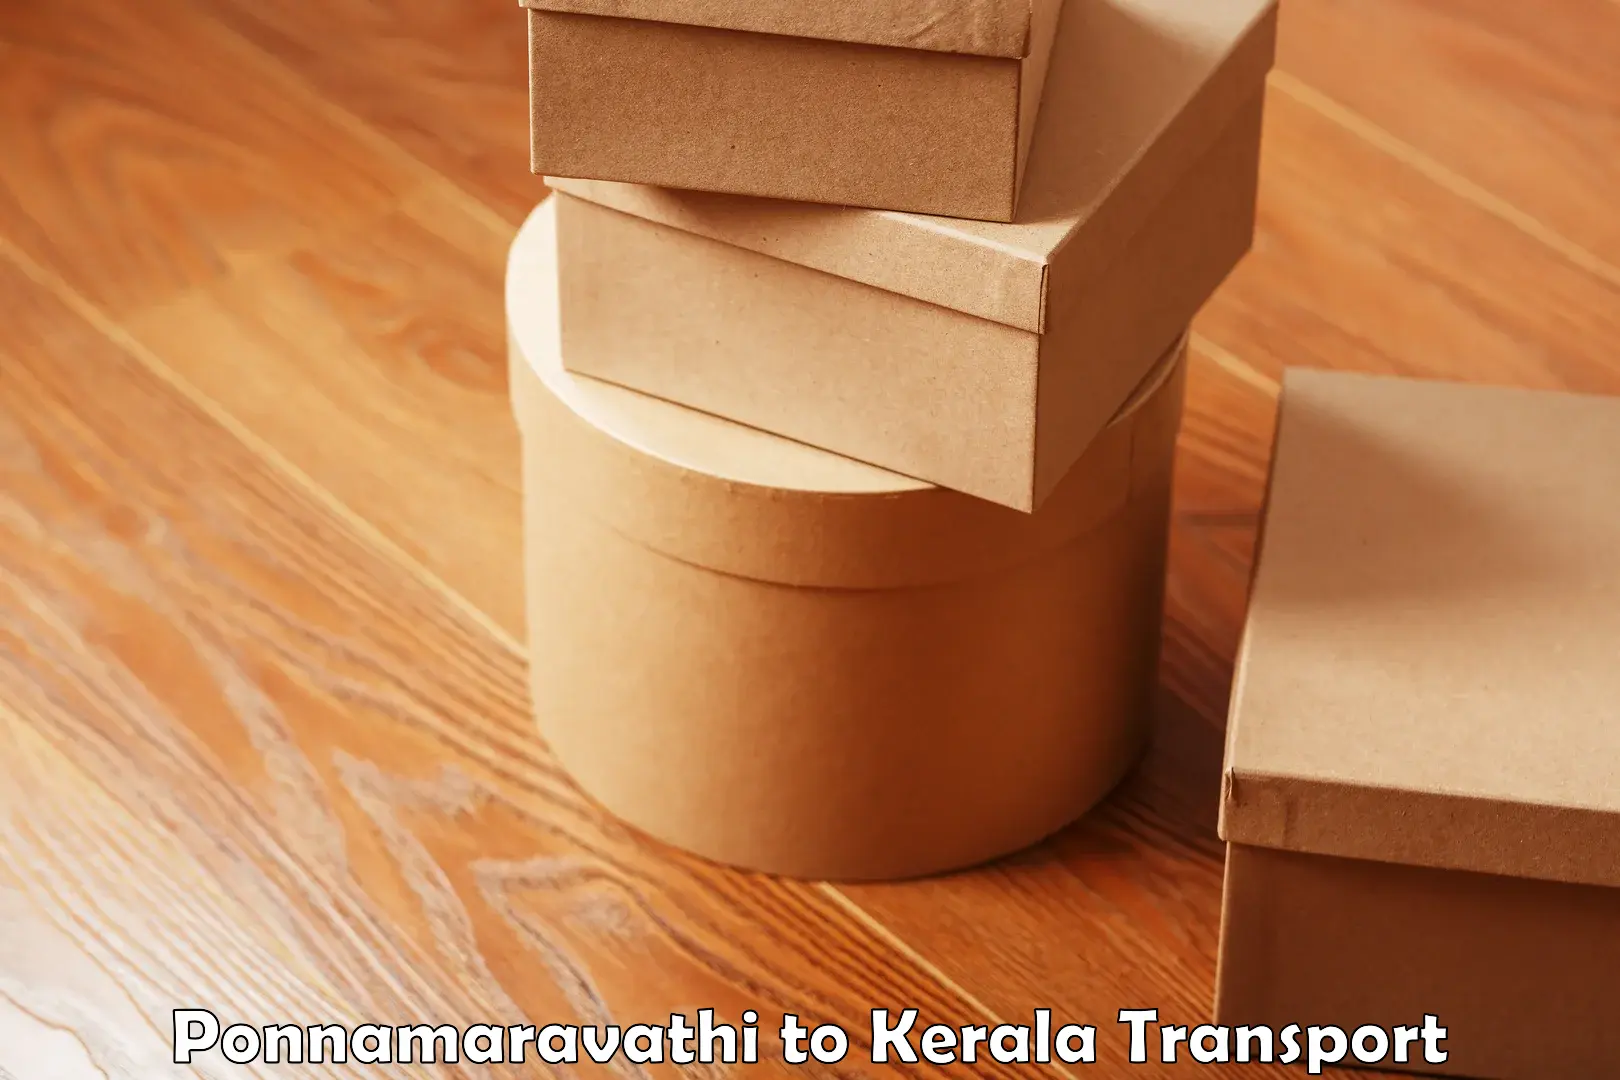 Cargo transport services Ponnamaravathi to Kakkur